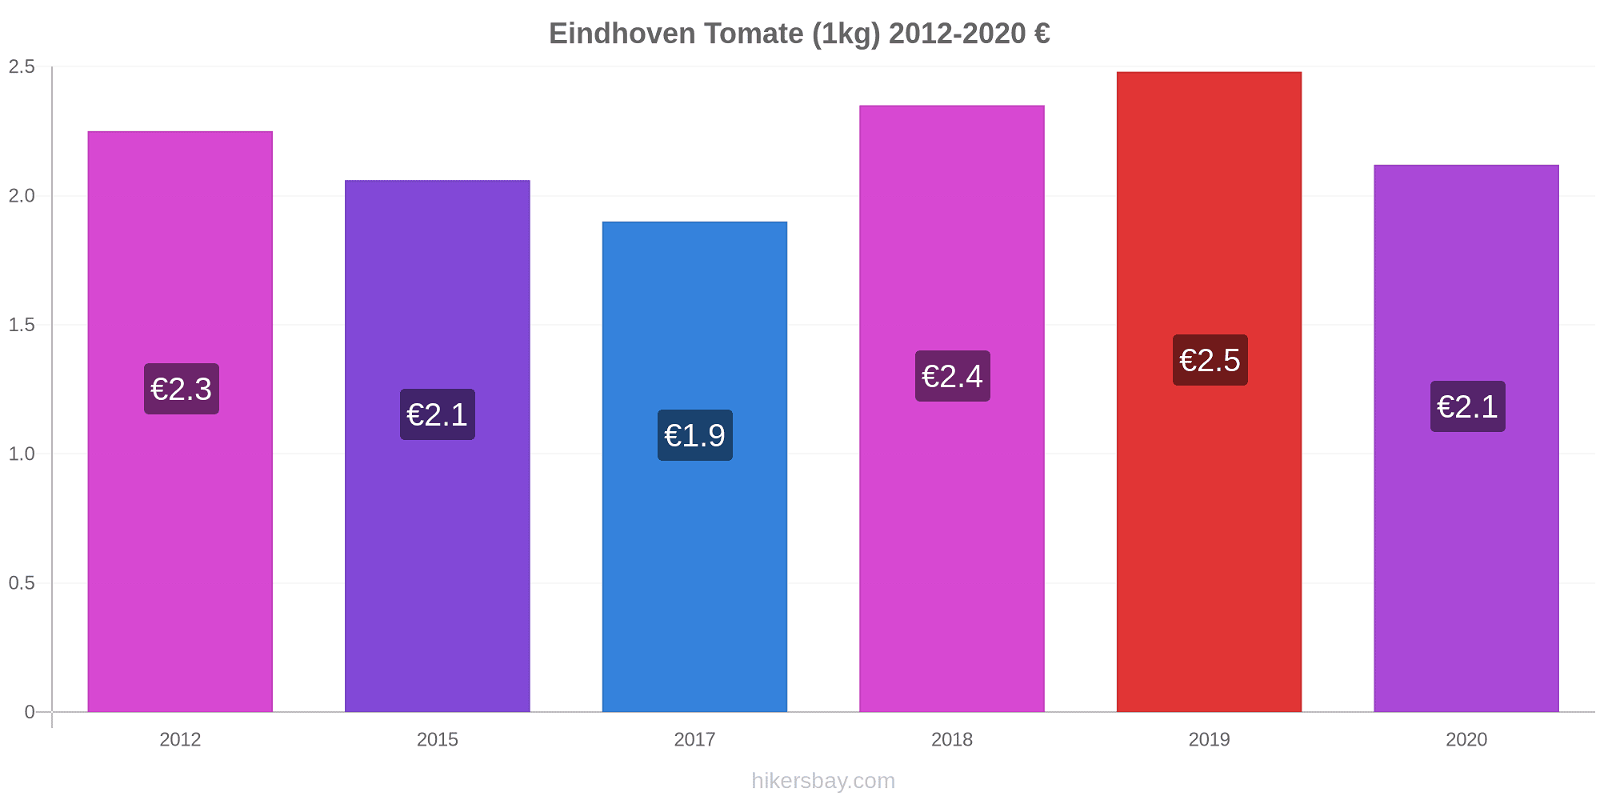 Eindhoven changements de prix Tomate (1kg) hikersbay.com